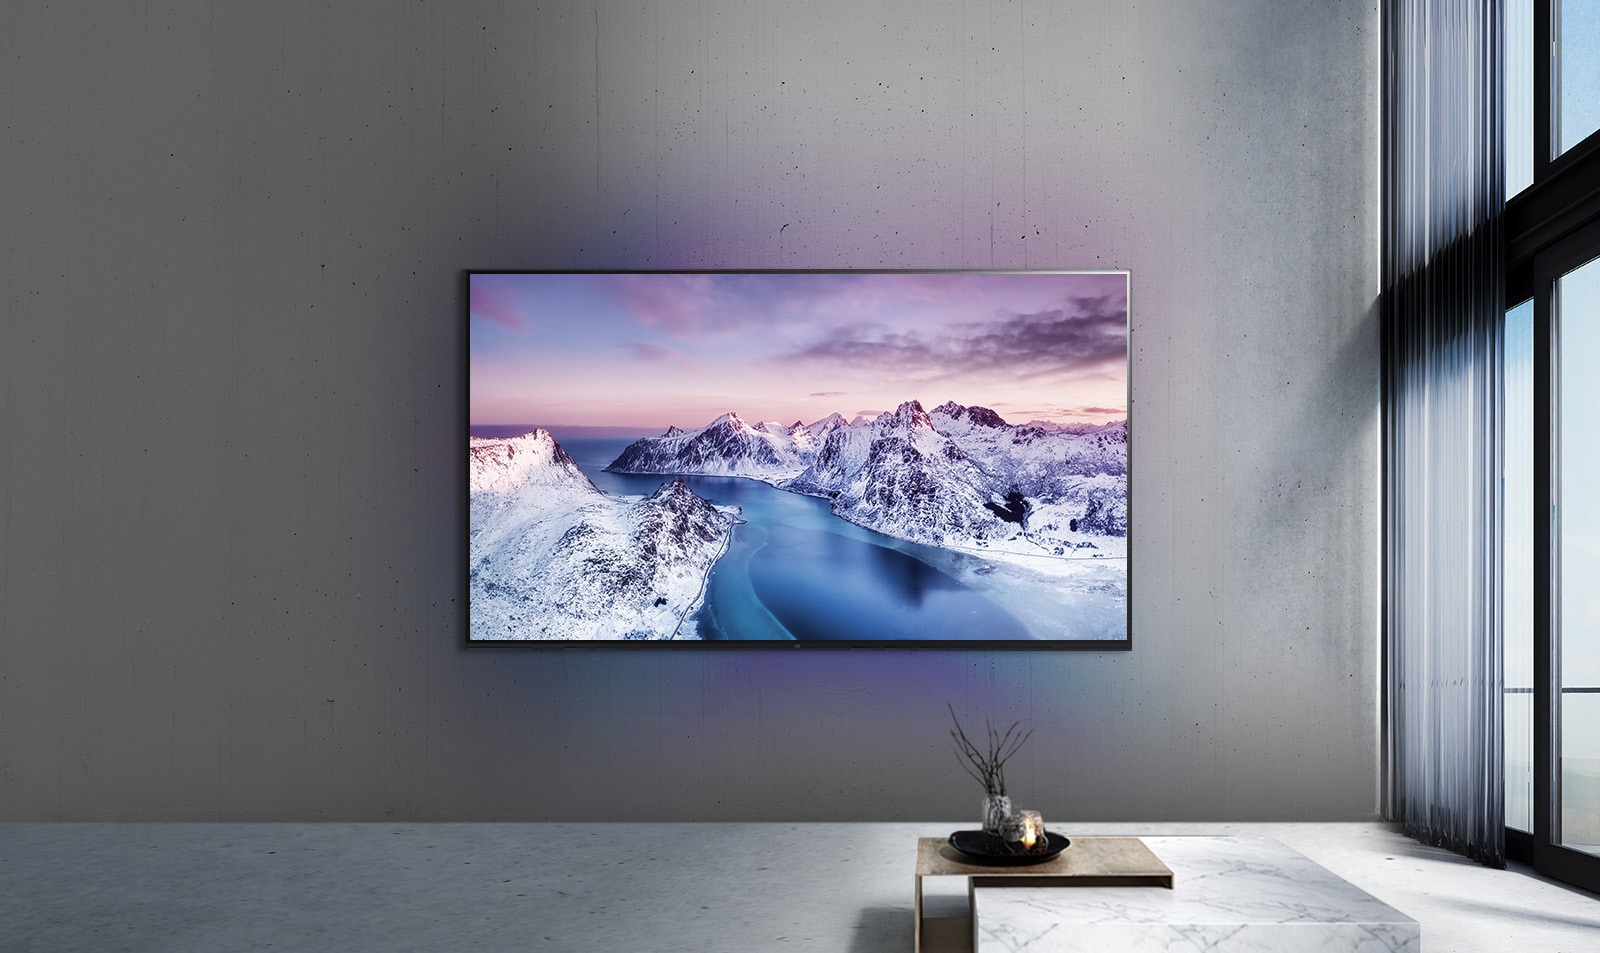 Ultra HD televizor namontovaný na stěně za stolem s dekoracemi ve stylu zen.